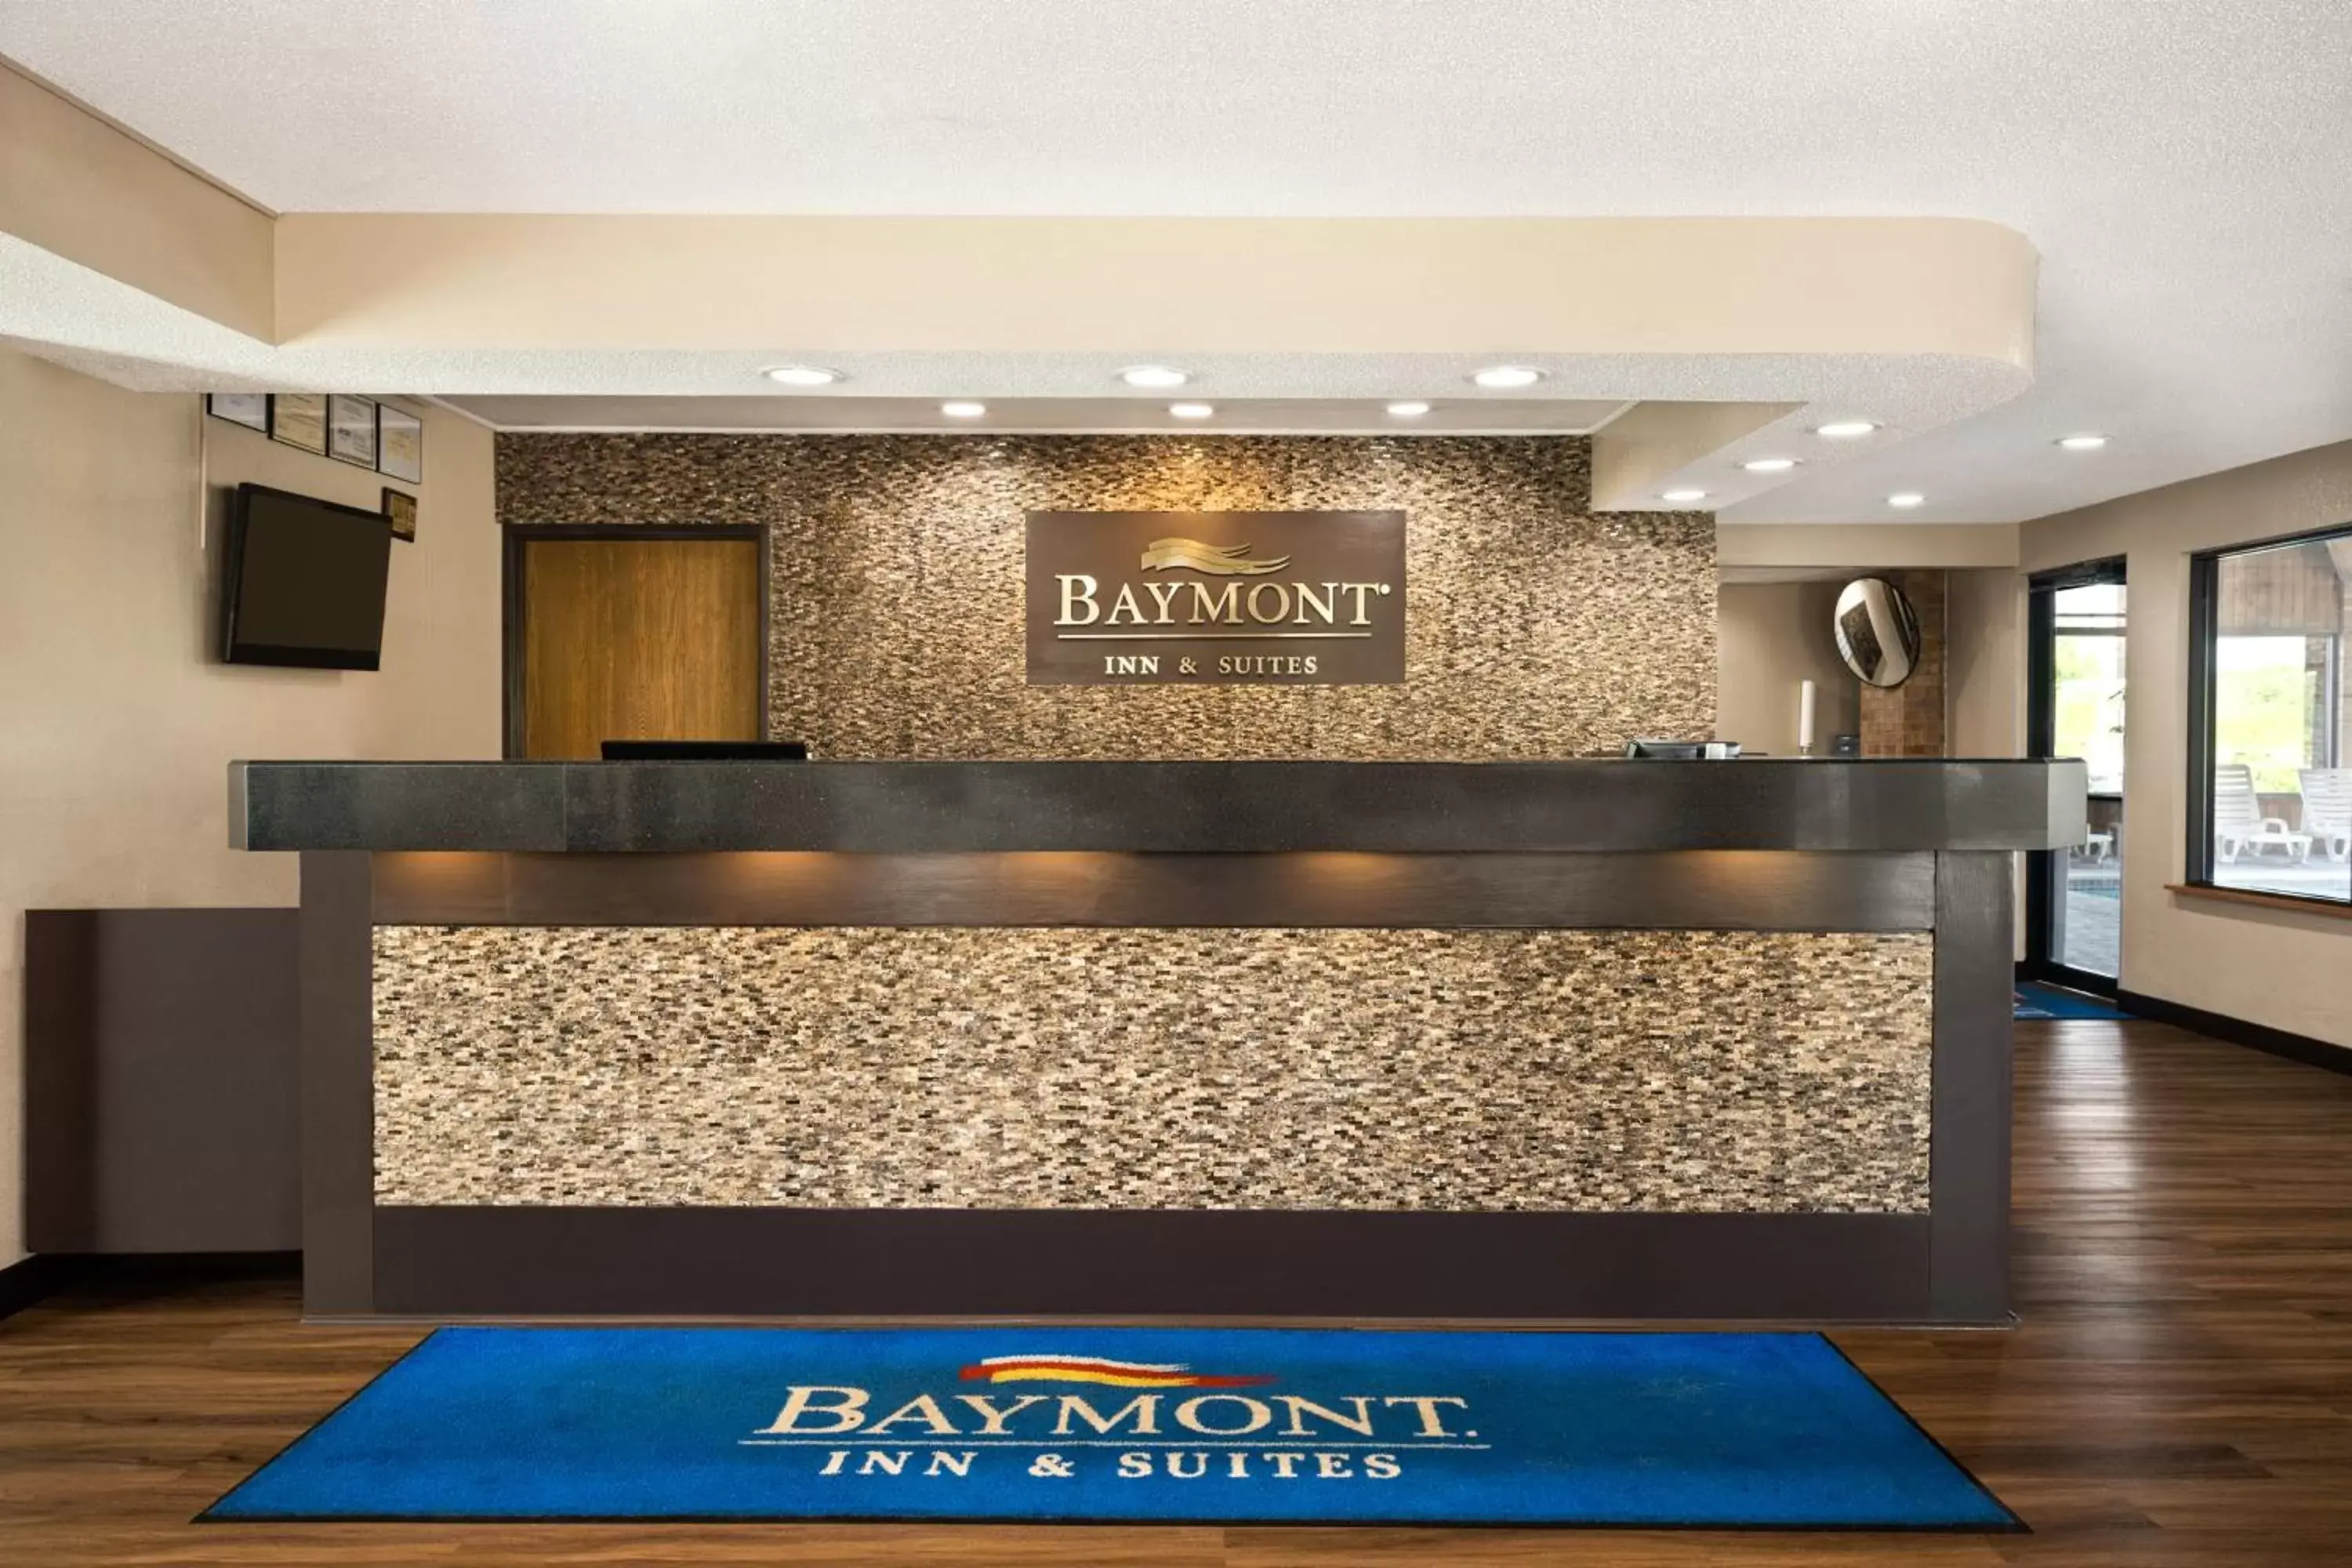 Lobby or reception, Lobby/Reception in Baymont by Wyndham Warrenton